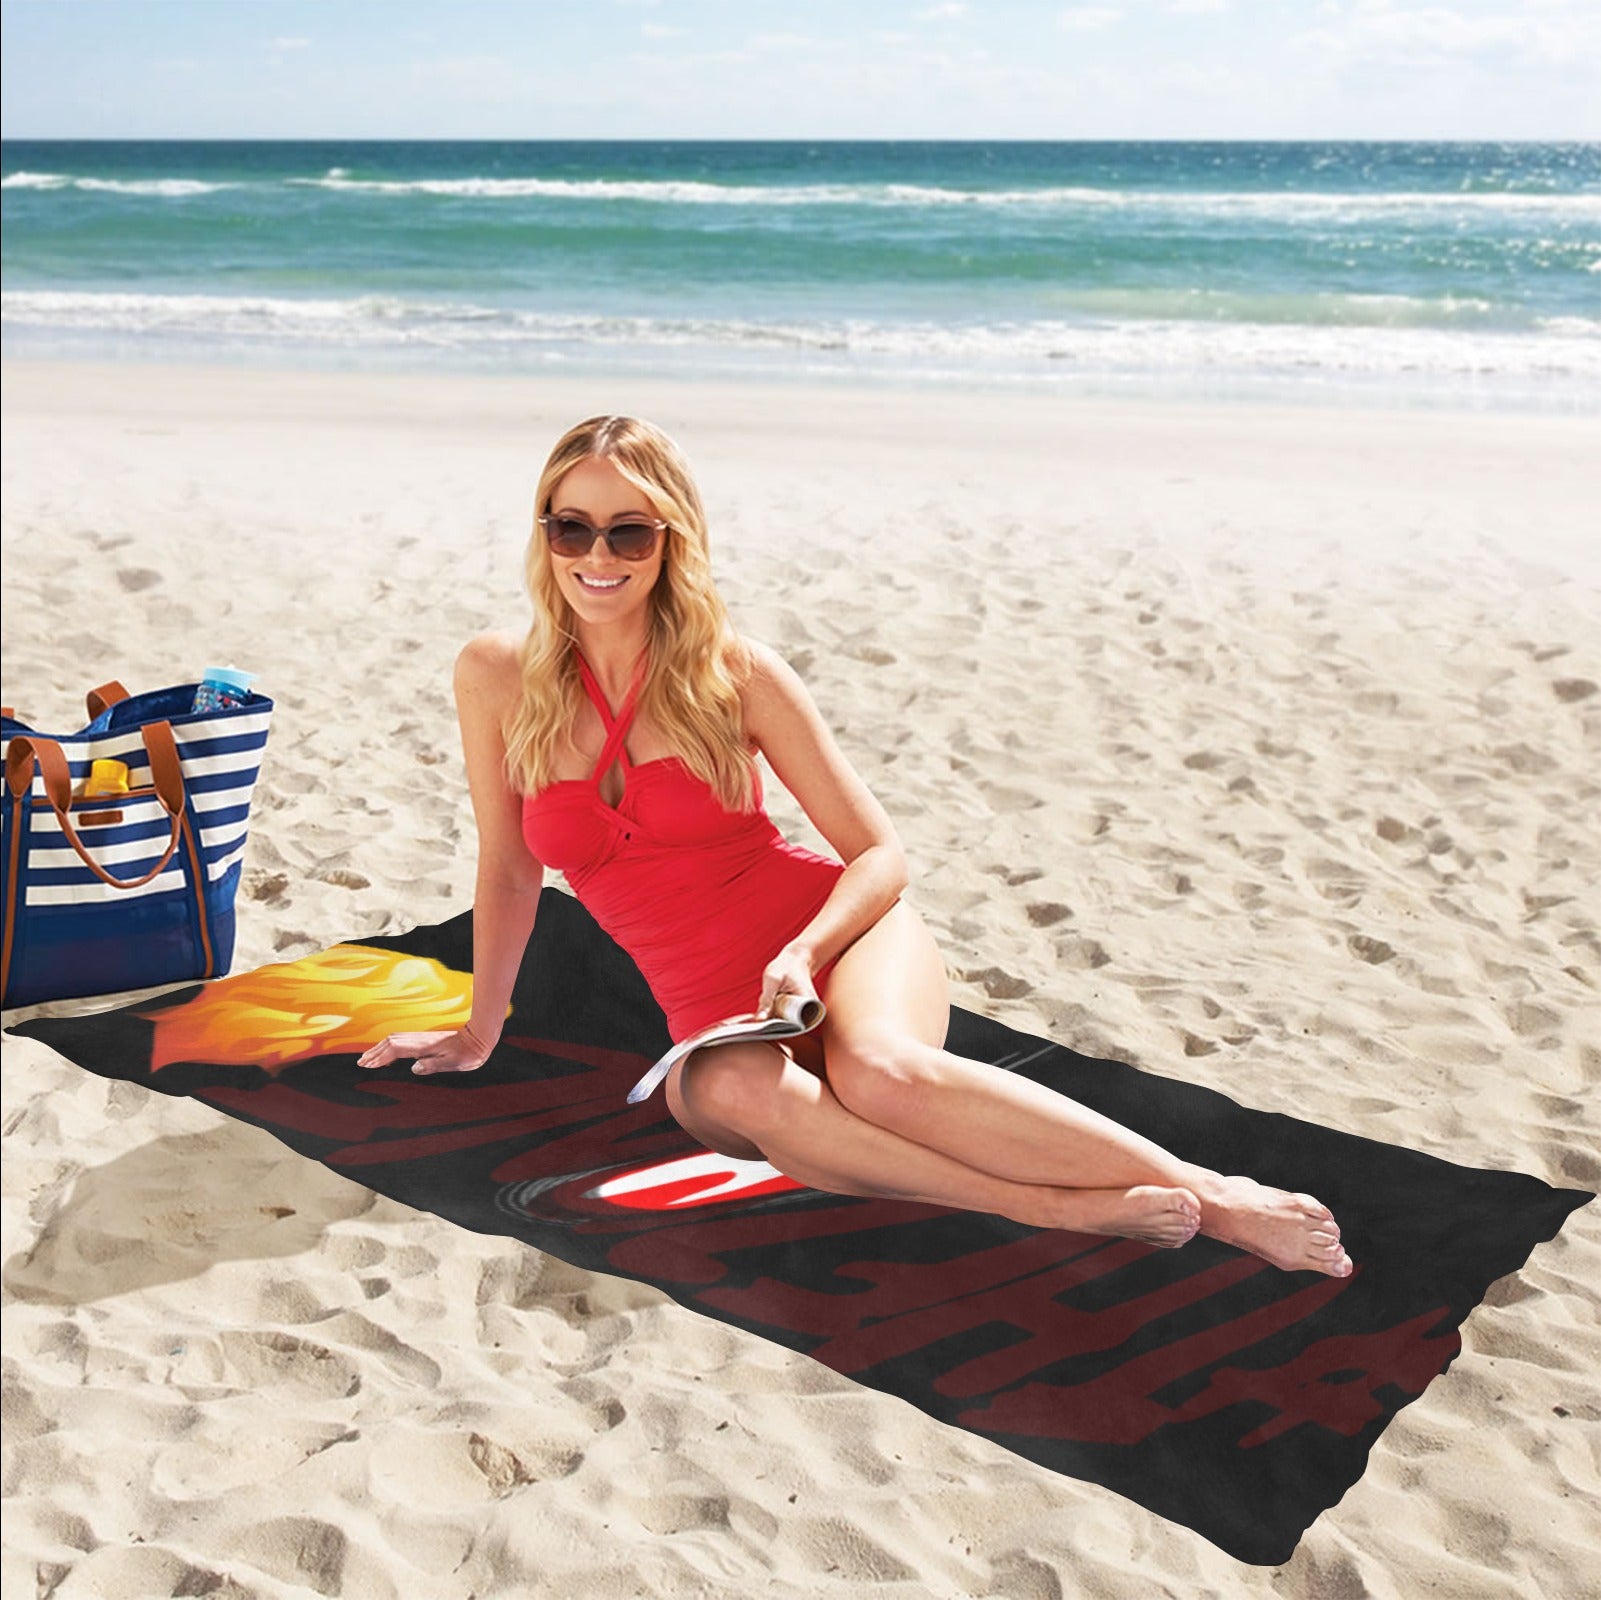 fz zone beach towel